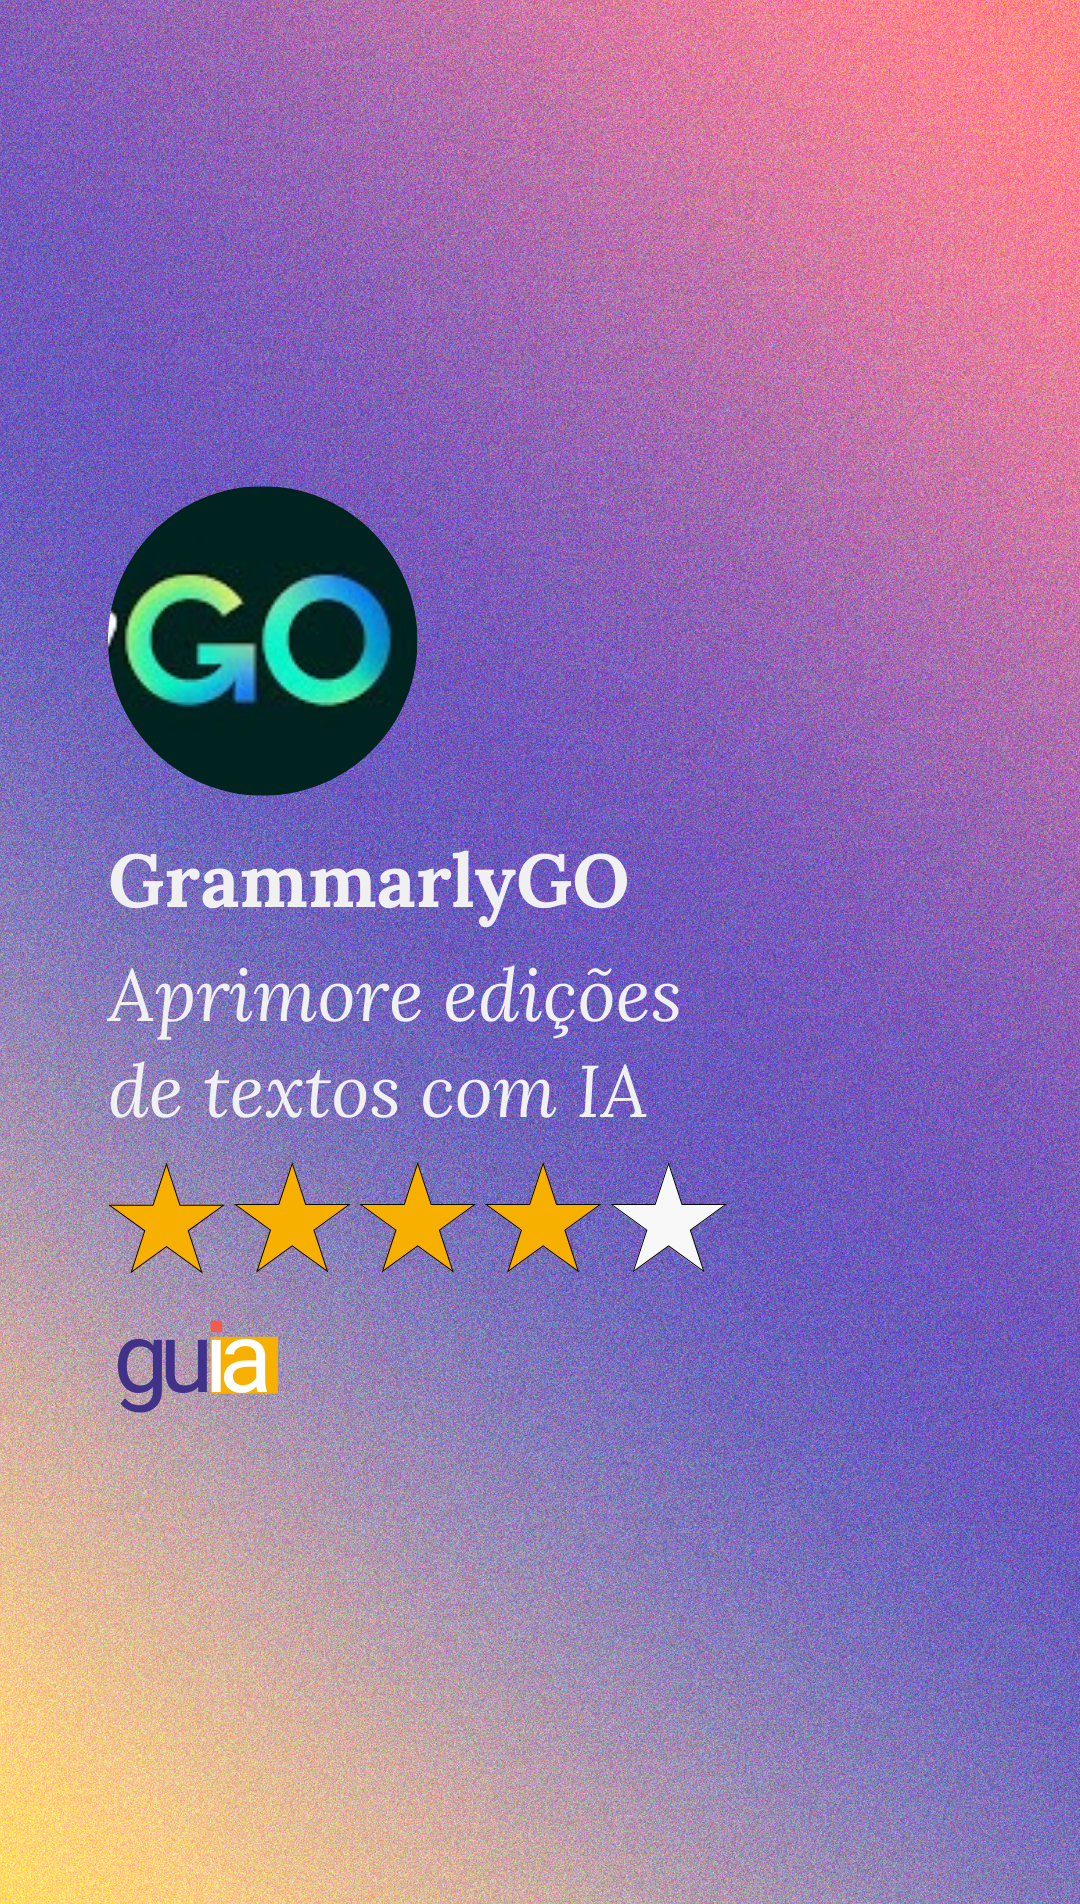 GrammarlyGO aprimora edições de textos com IA